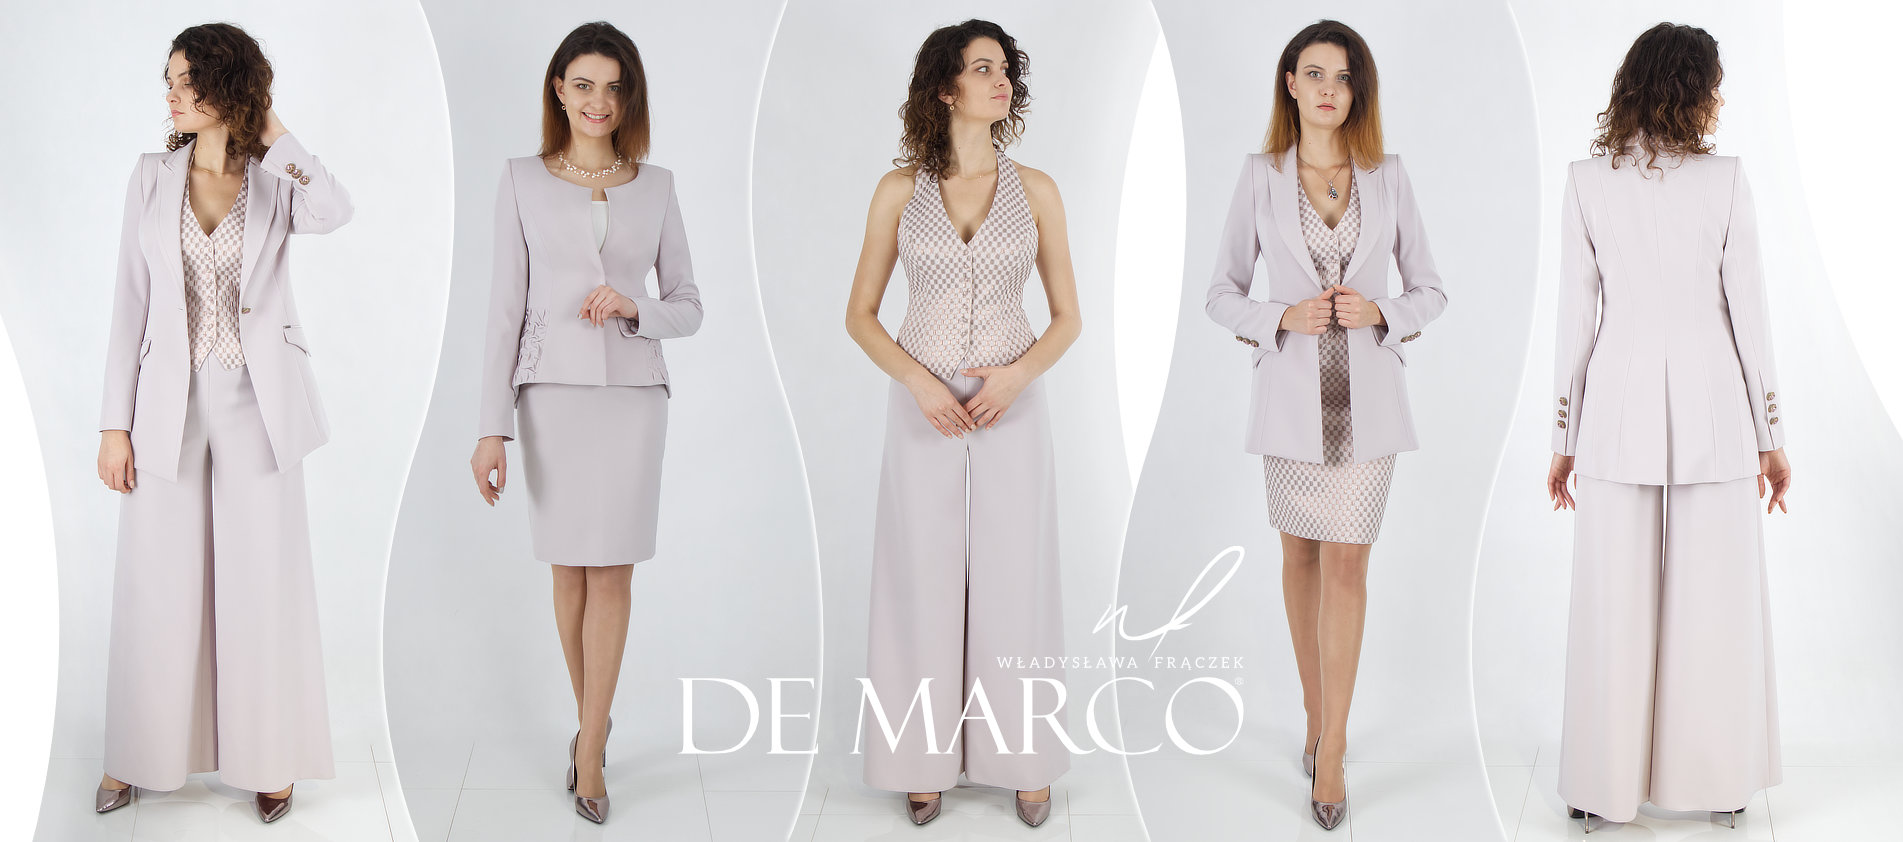 Damenbekleidung der Marke De Marco: Ihre Kleidung, Ihr Stil. Online Geschäft